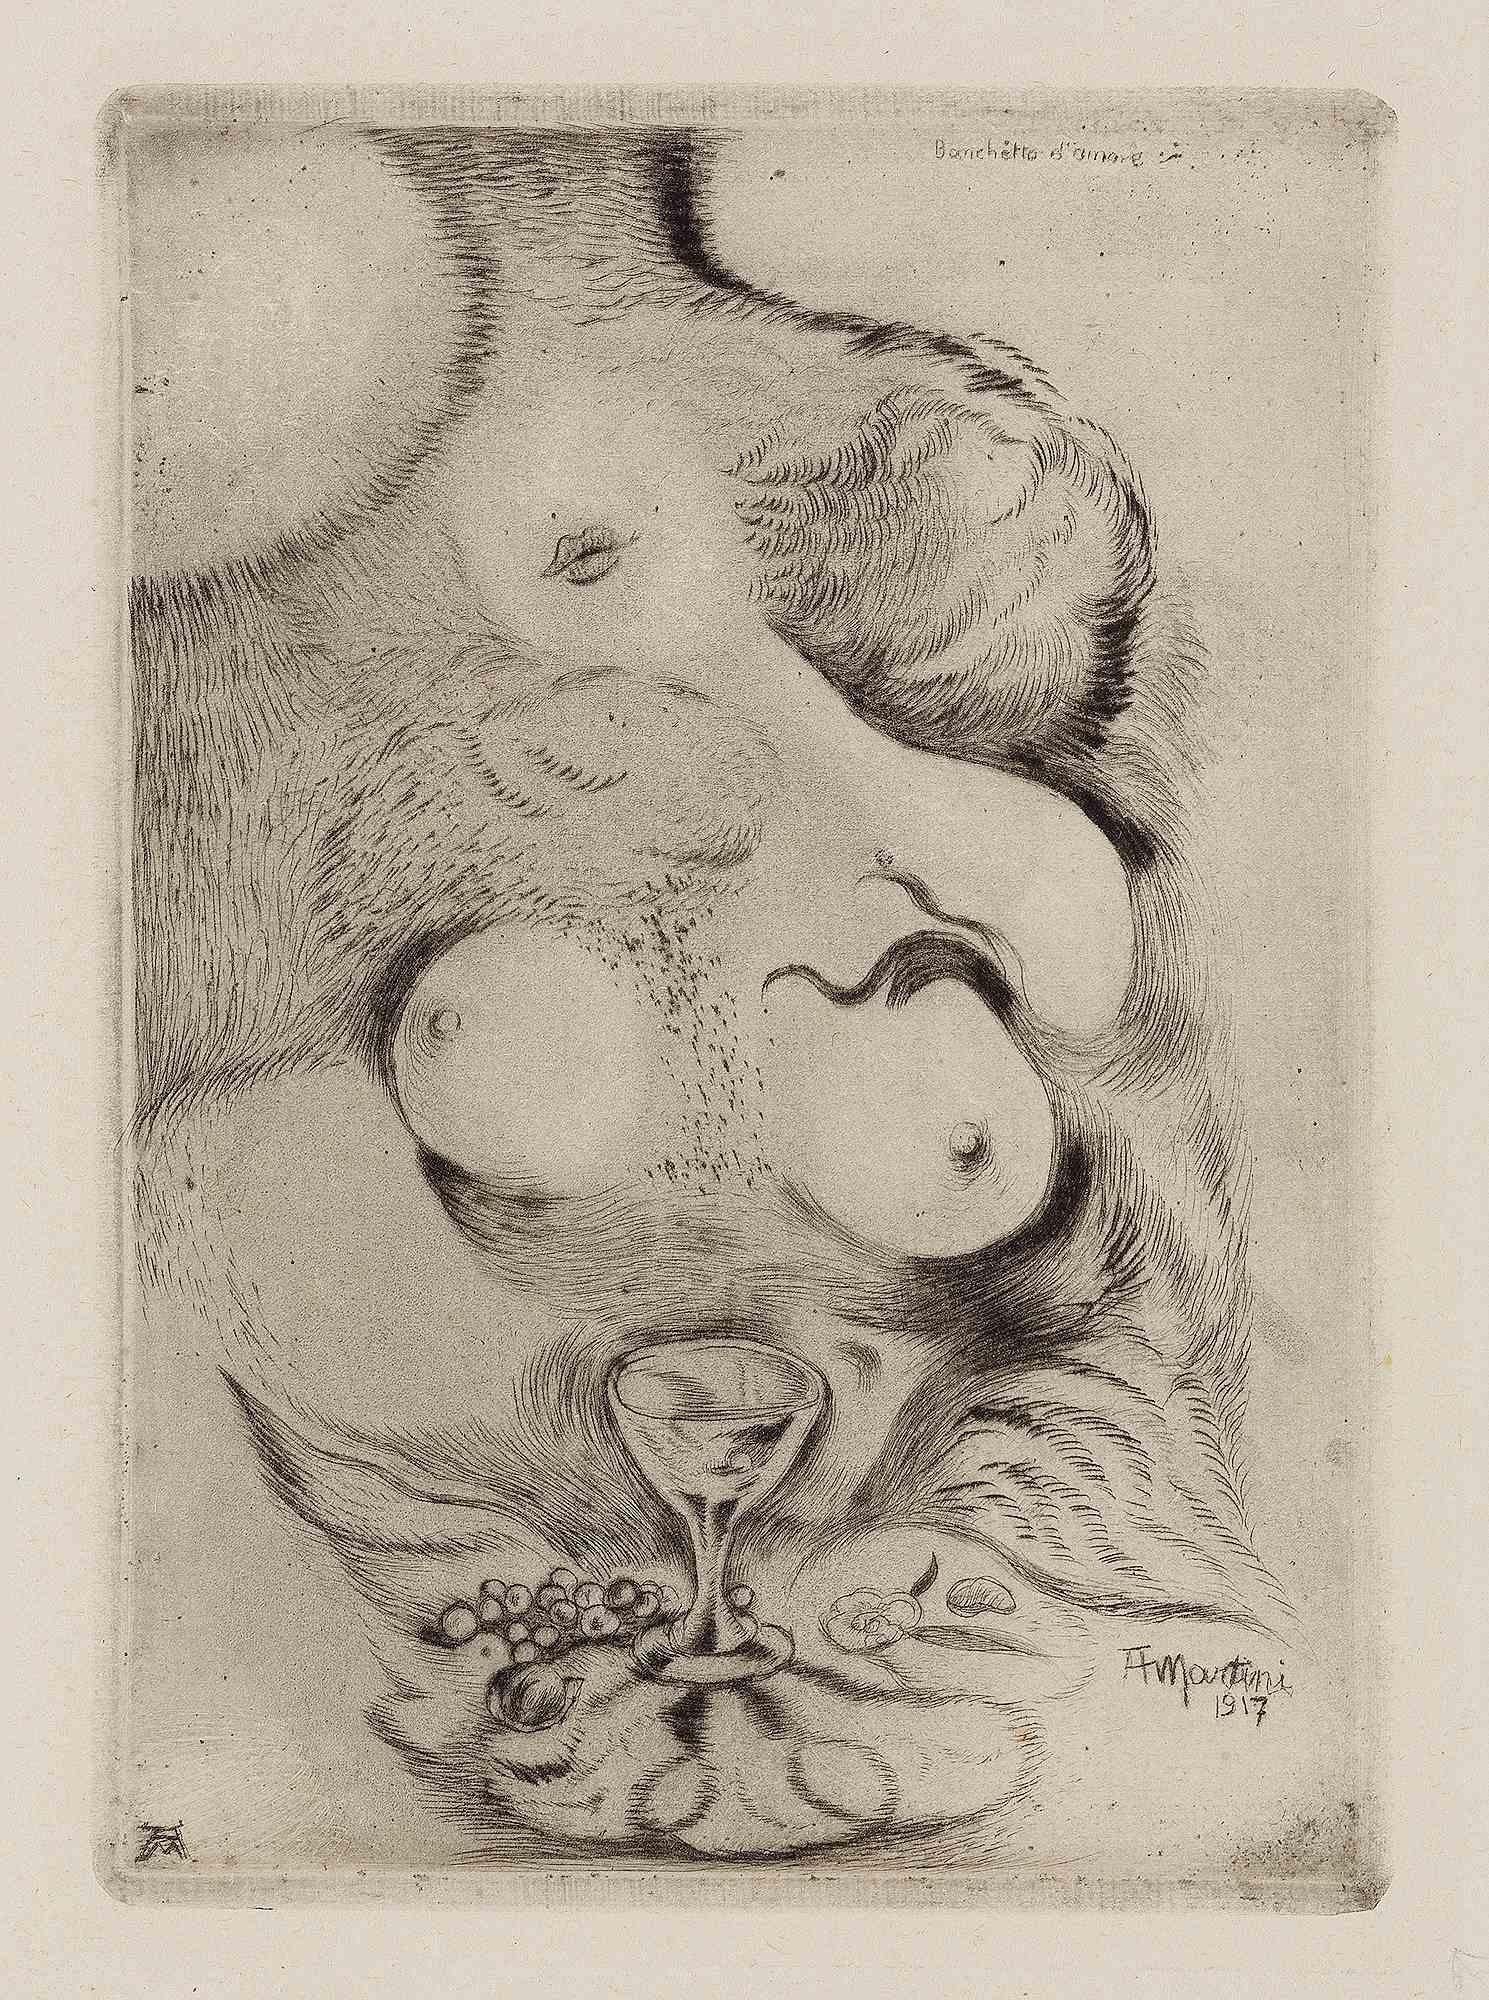 Banquet d'amour est une œuvre d'art moderne réalisée par Alberto Martini en 1917.

Burinage et pointe sèche. Deuxième état sur trois. 

Signé sur la plaque

Imprimé en 1945 en 25 exemplaires.

Alberto Martini (Alberto, 1876 - Milan, 1954) ; il était